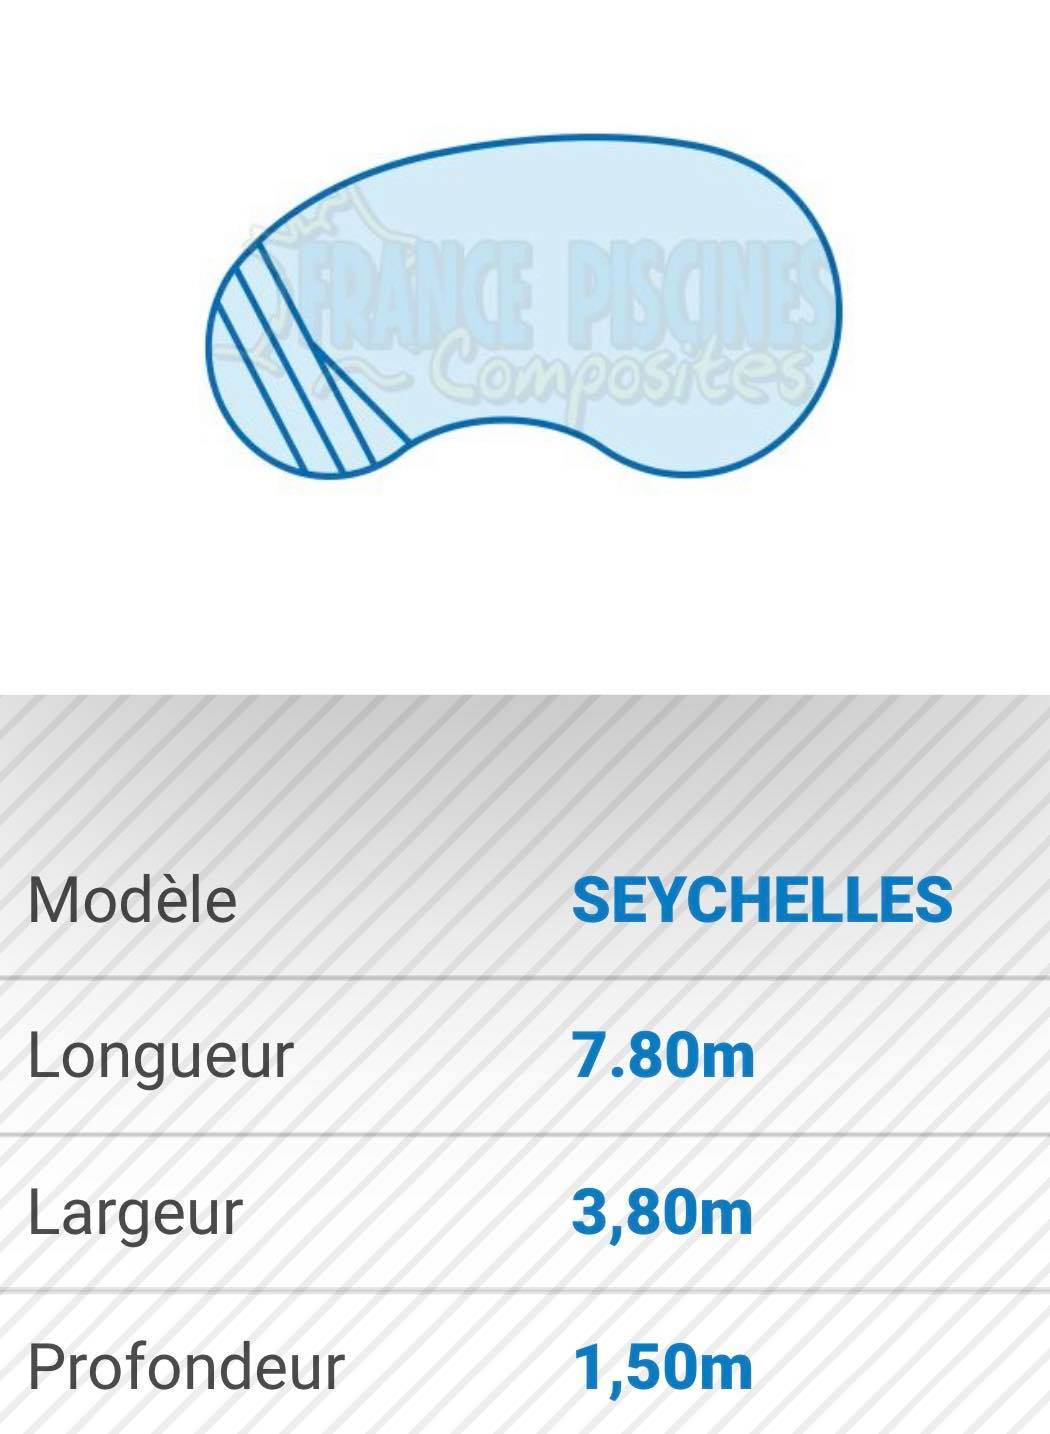 Piscines modèle SEYCHELLES France Piscines Composites 13